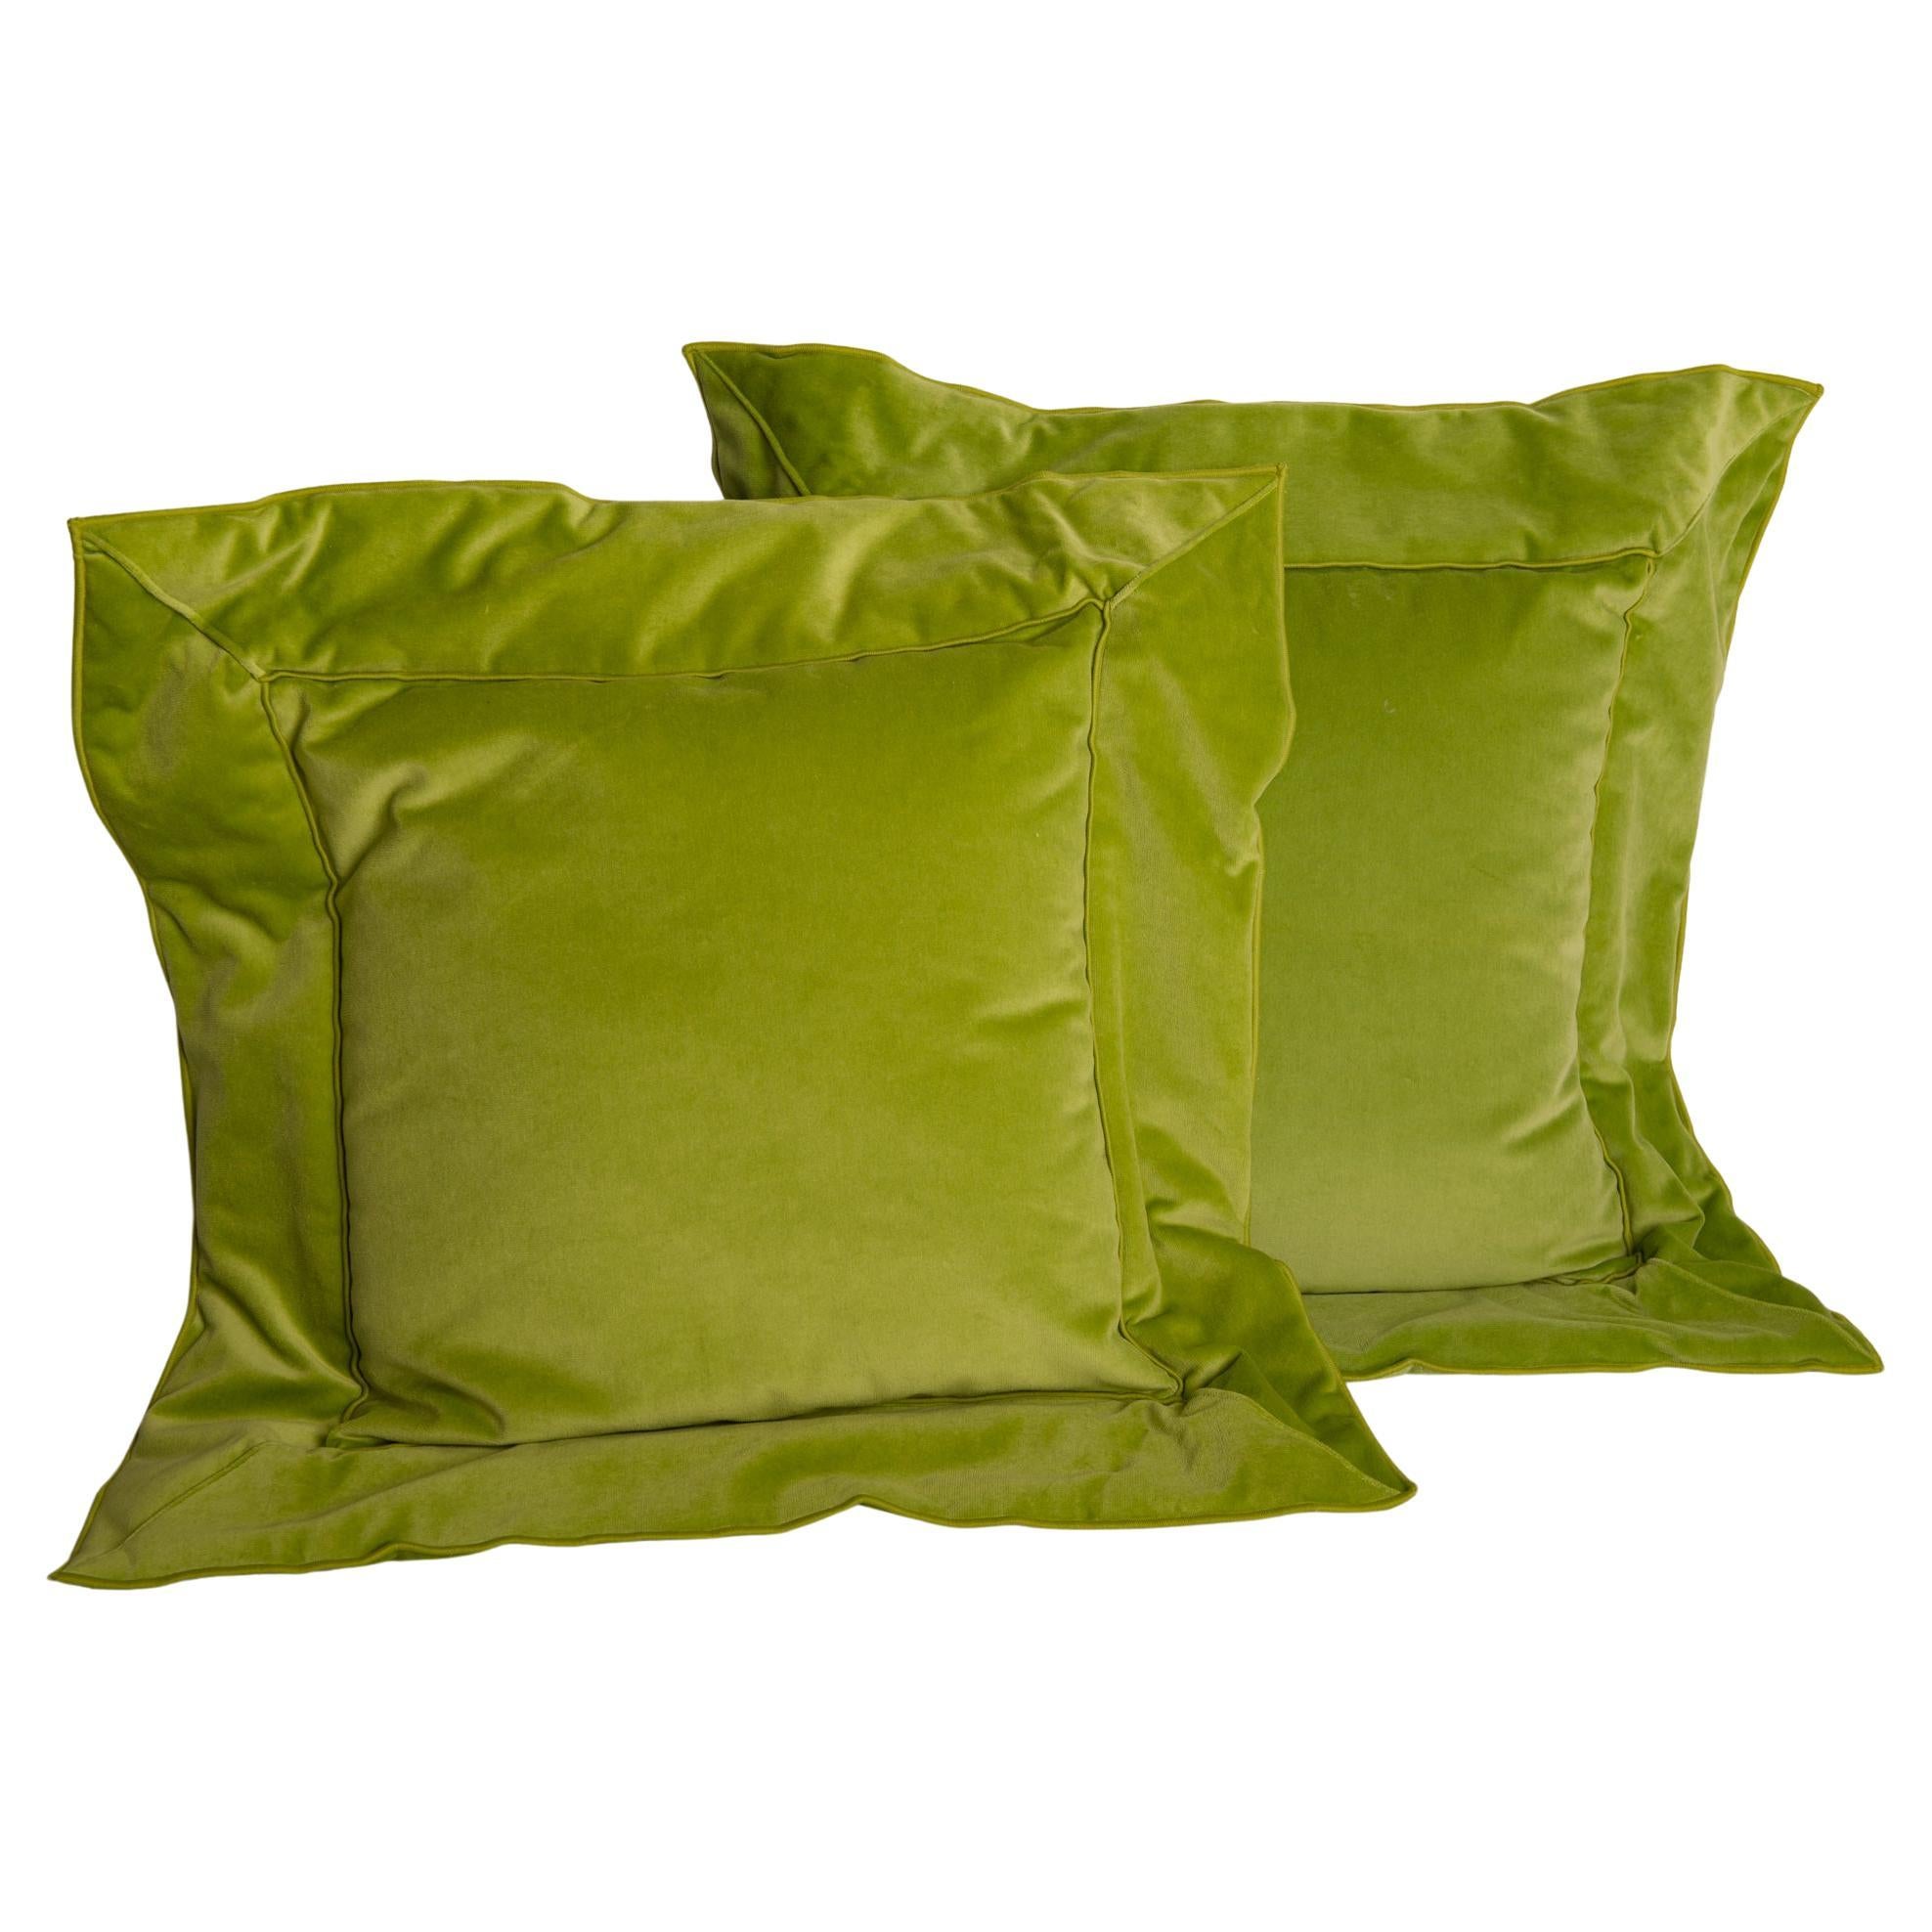 Pair of Apple Green Unusual Velvet Pillows